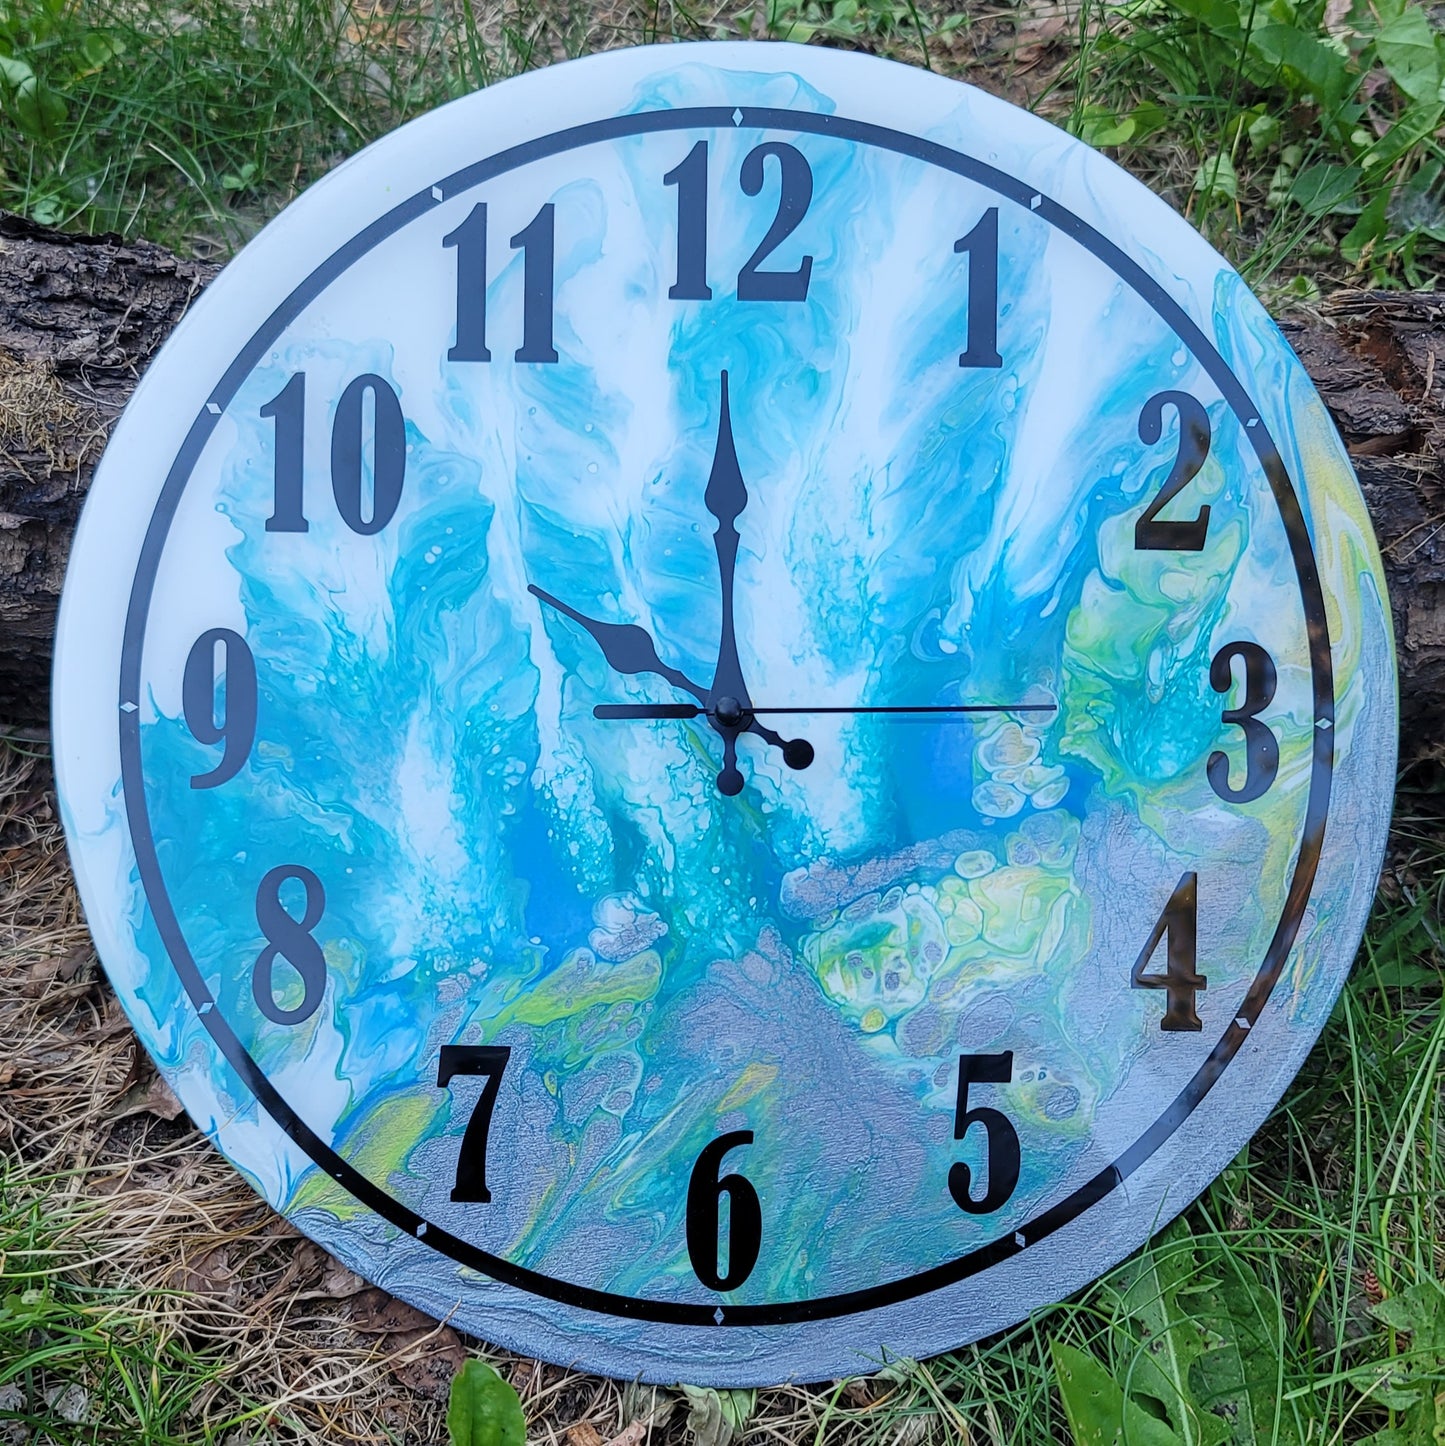 Handmade 12" Acrylic Fluid Art Wall Clock with Resin